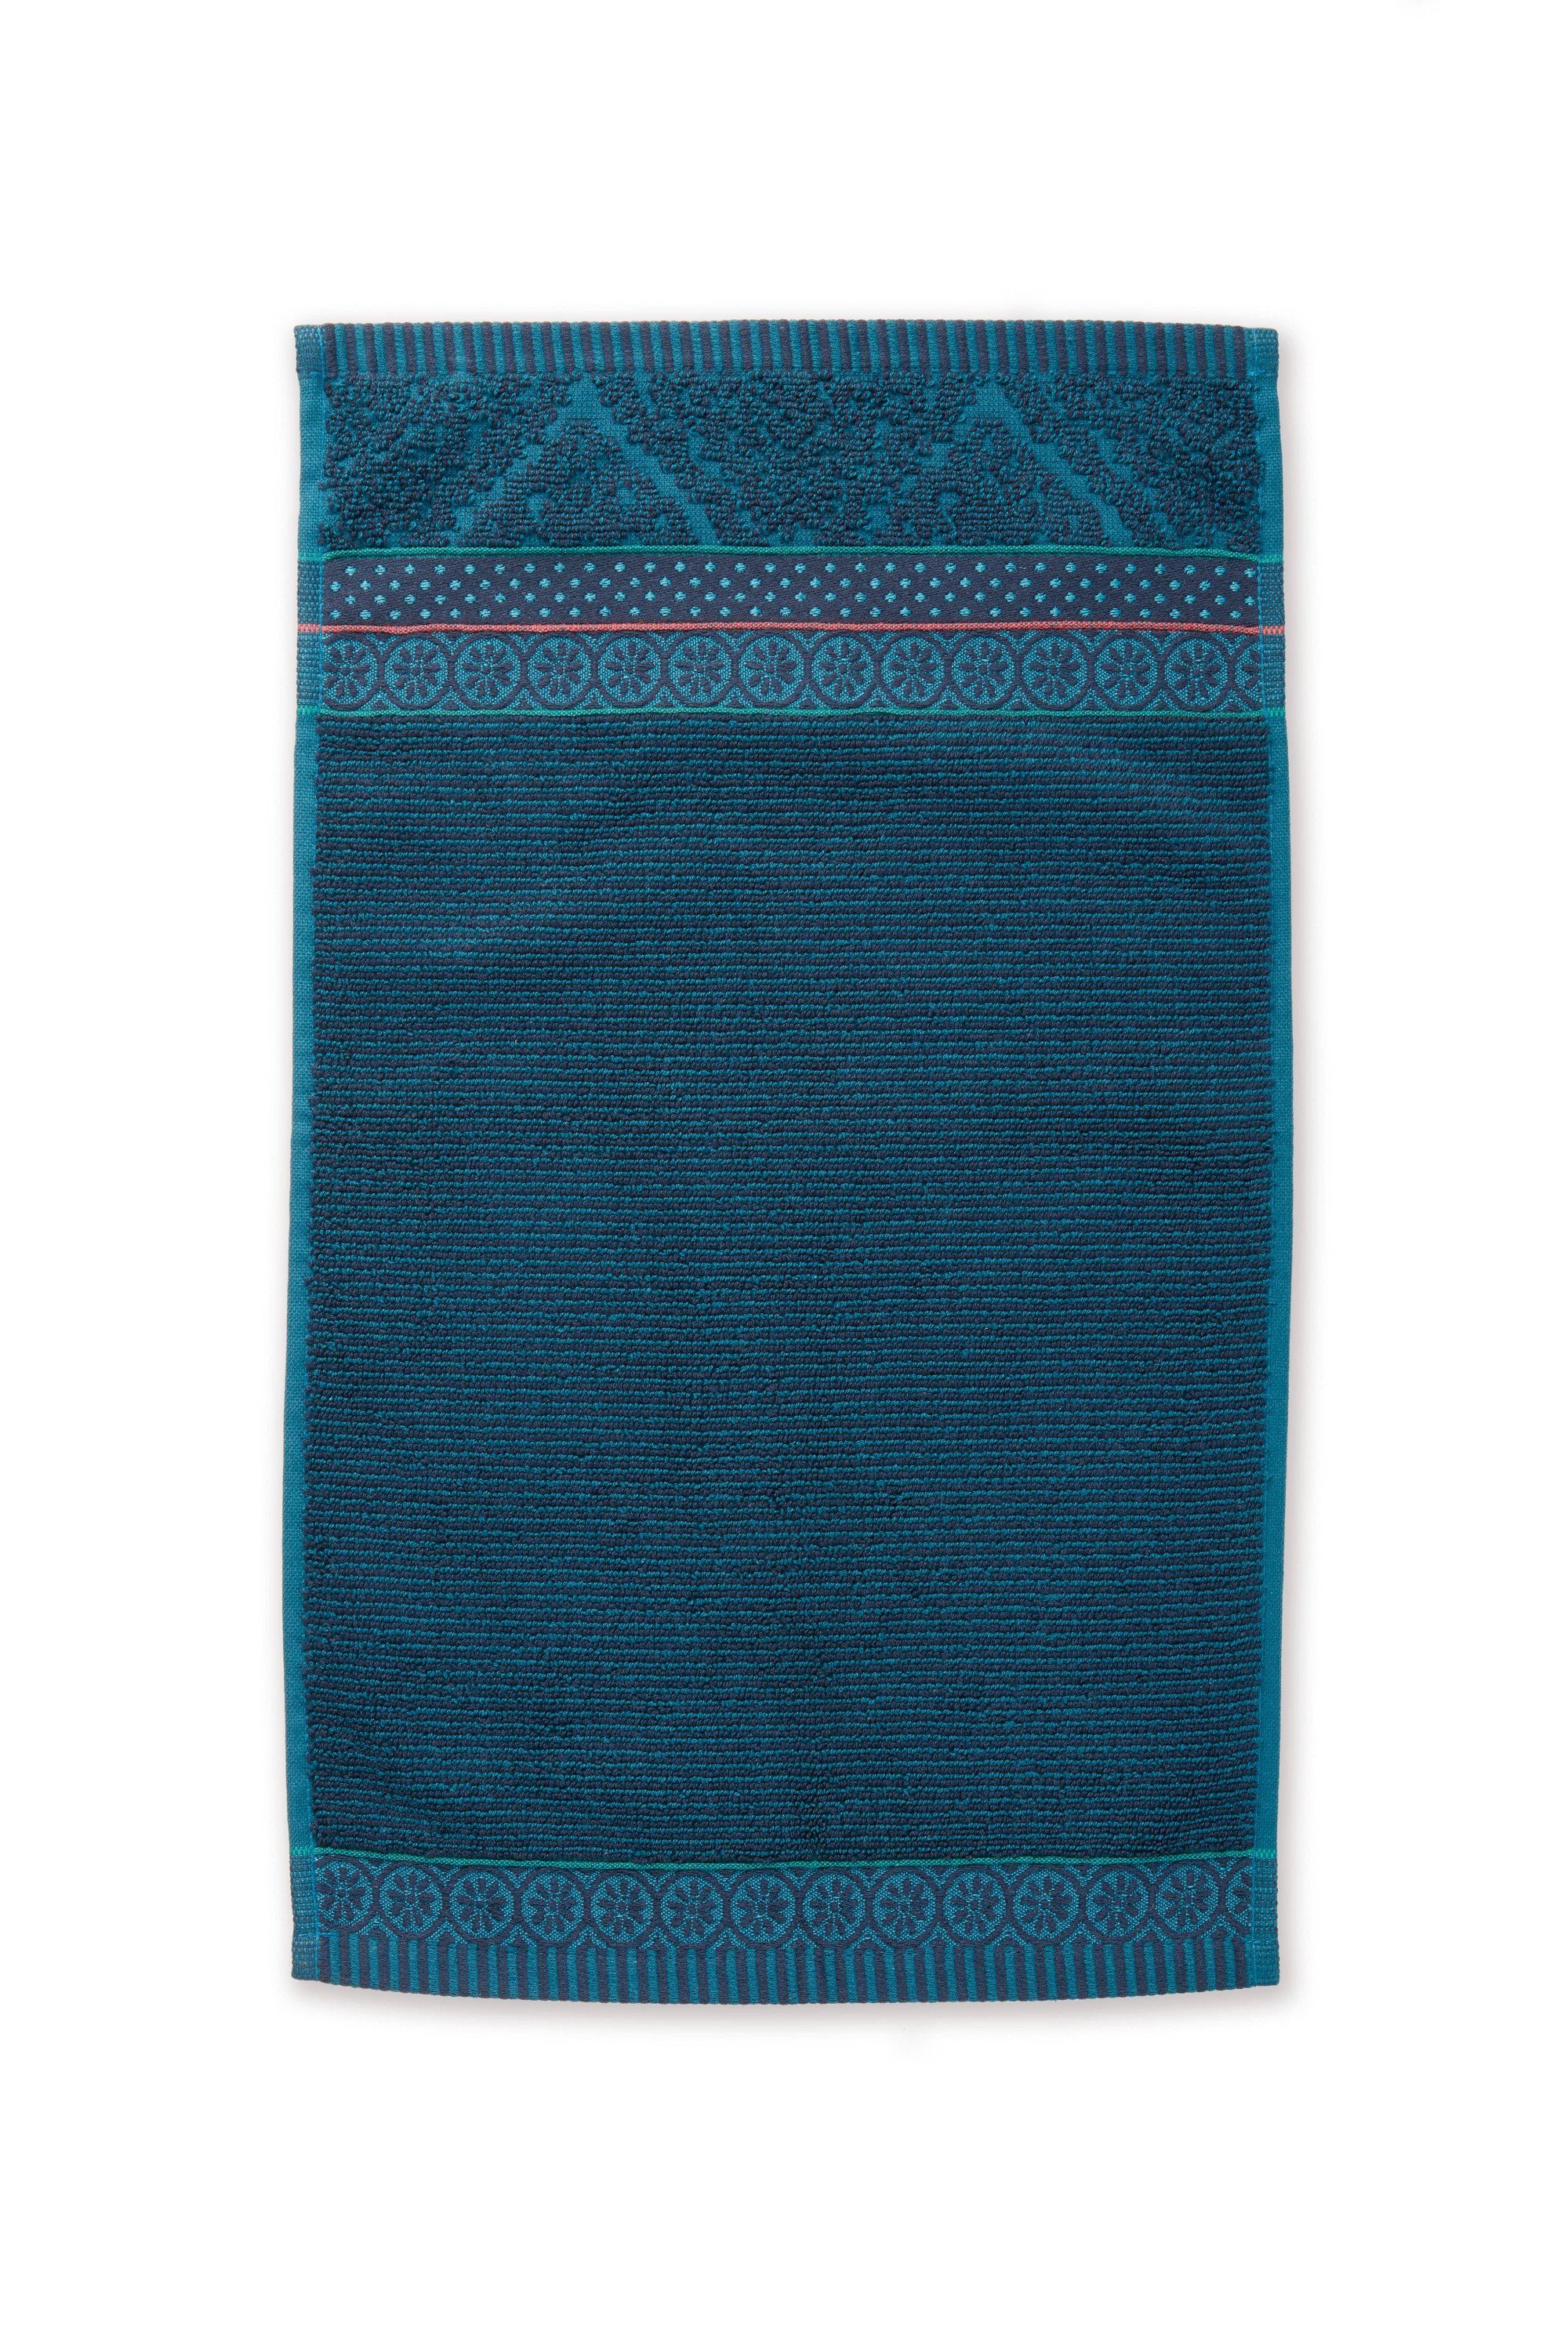 PiP Studio Handtuch Pip SOFT ZELLIGE Waschhandschuh Gästetuch Handtuch Duschtuch, Dark blue, Baumwolle, rechteckig